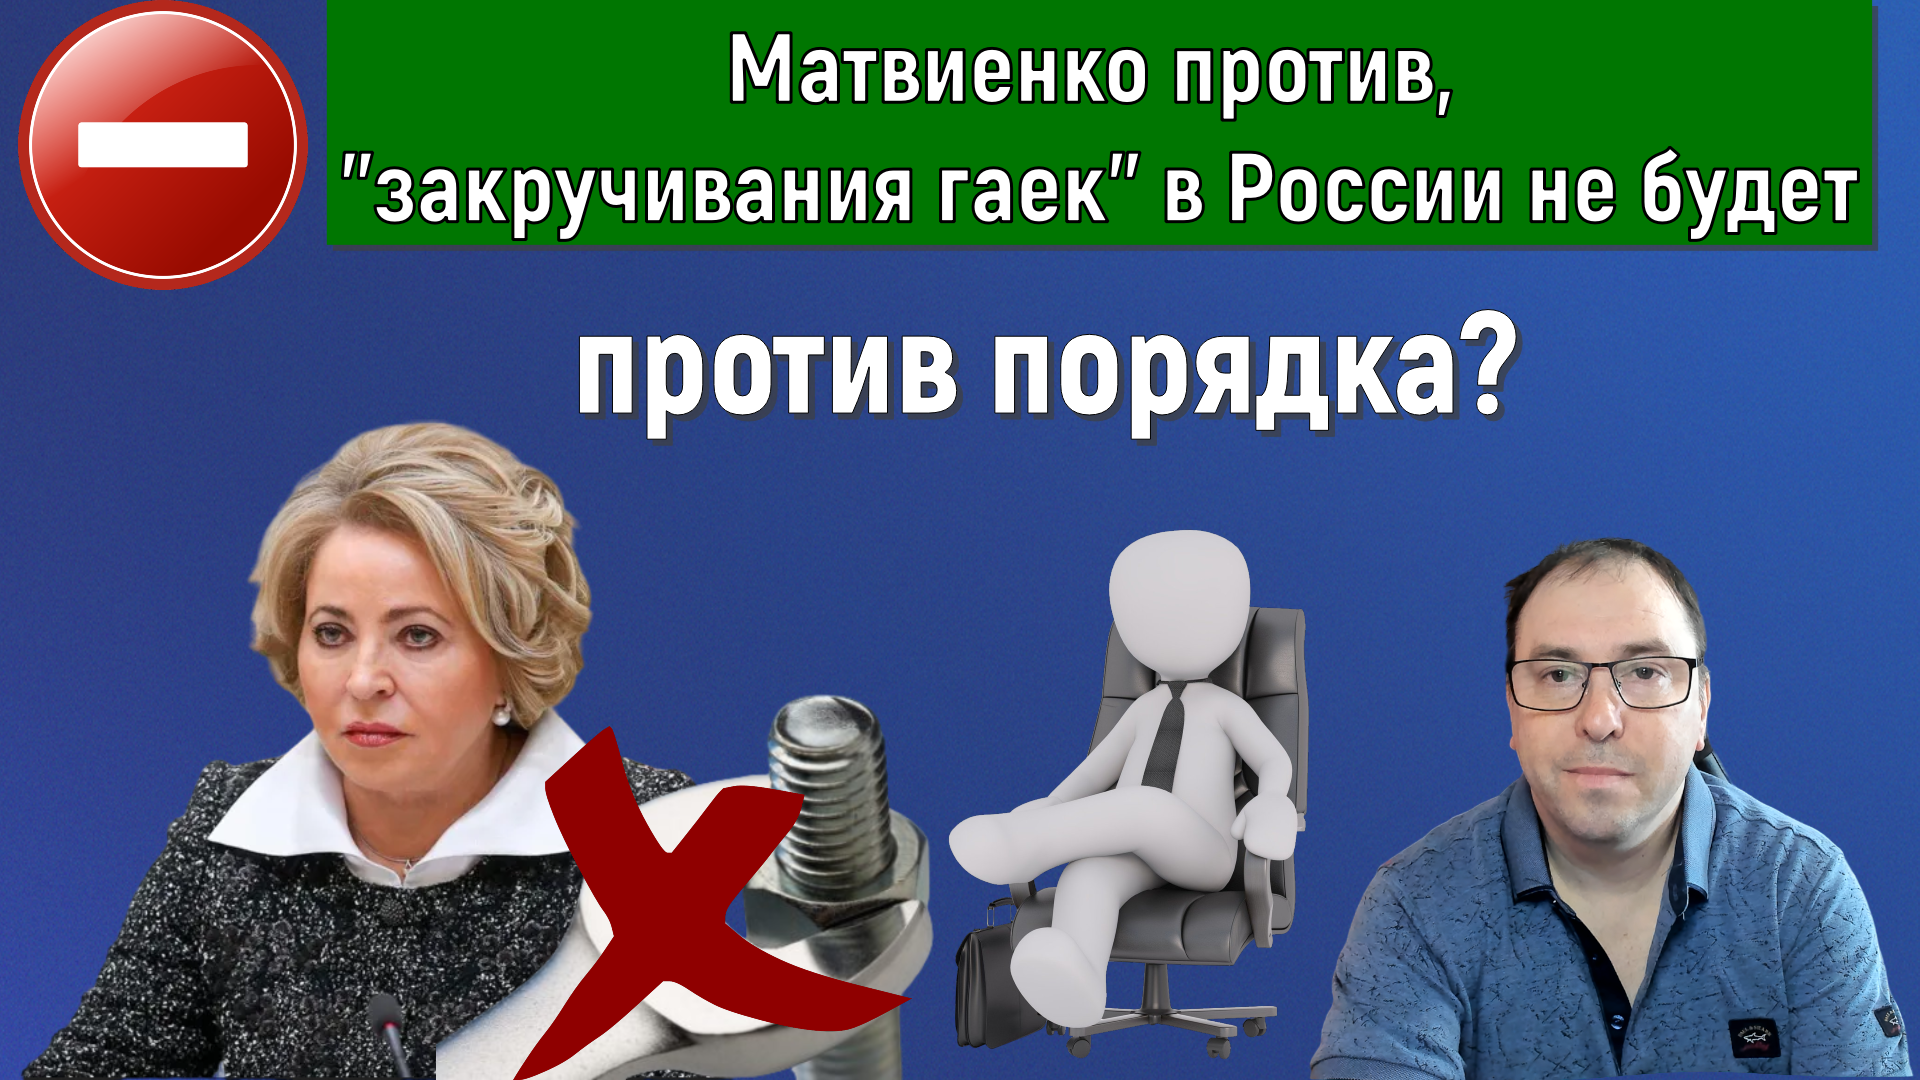 Матвиенко ПРОТИВ, "закручивания гаек" в России не будет!